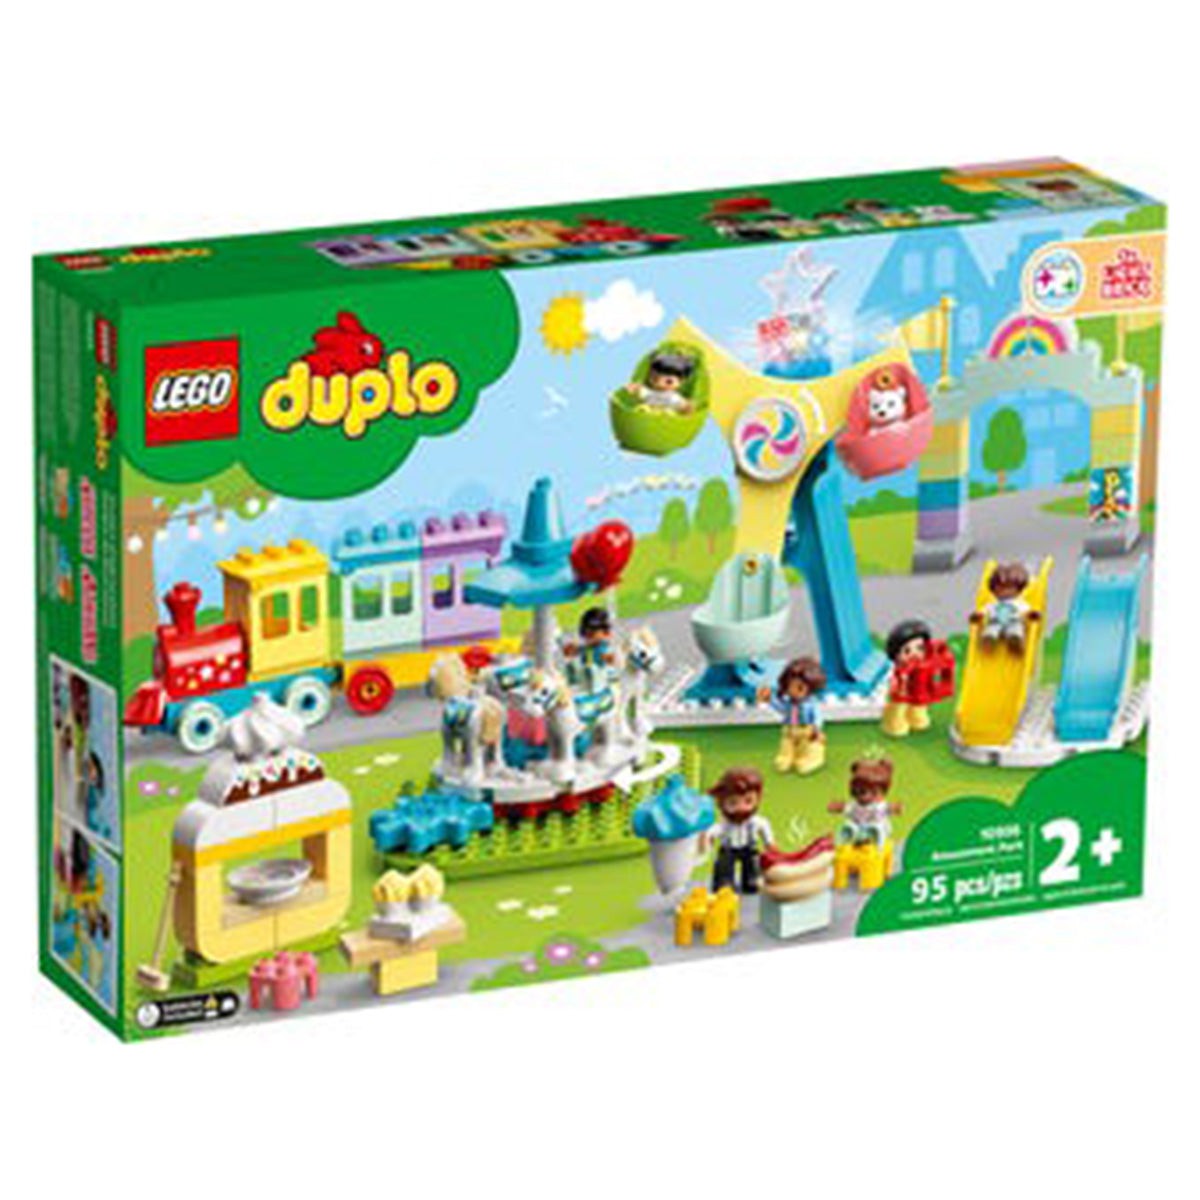 LEGO JOUET K.I.D. INC Toys & Games LEGO Duplo Amusement Park, 10956, Ages 2+, 95 Pieces 673419338141